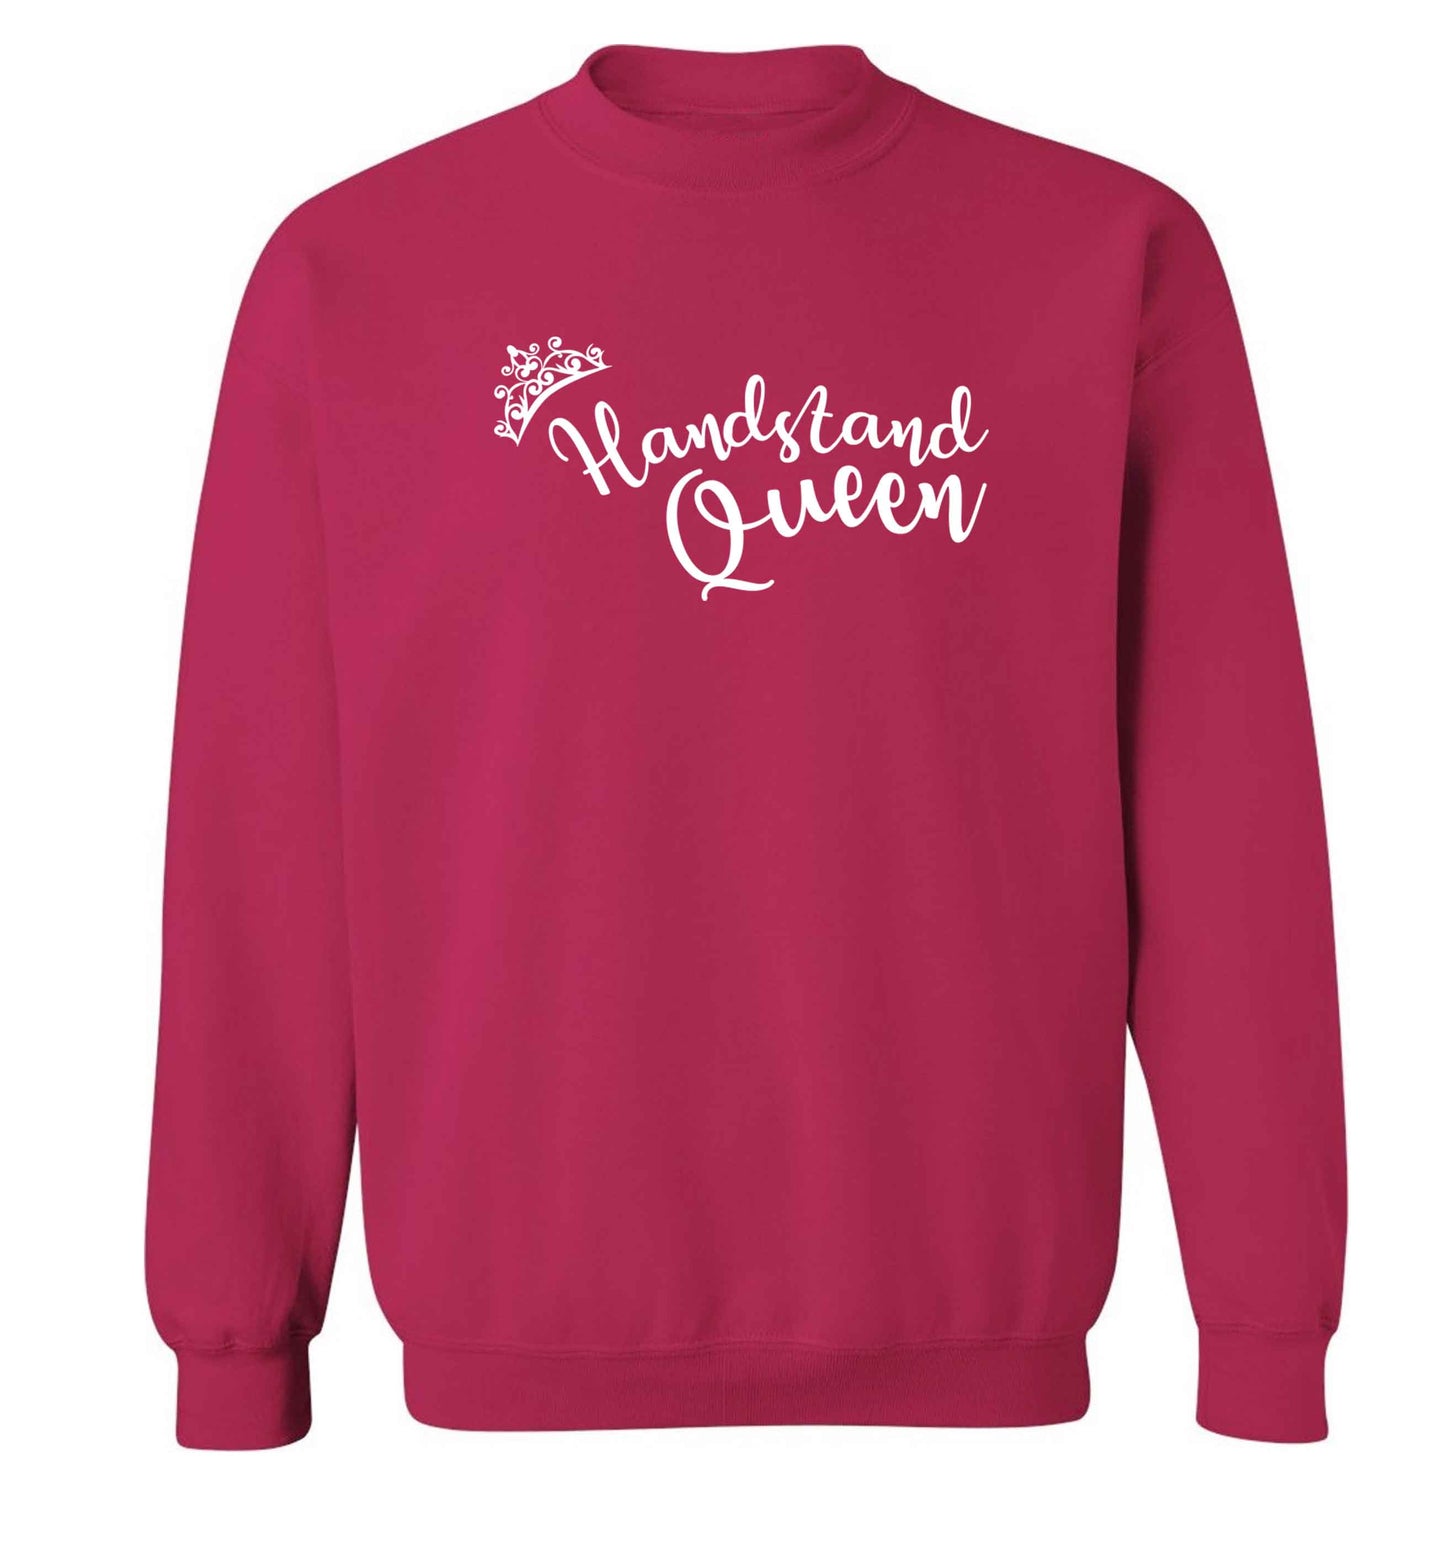 Handstand Queen Adult's unisex pink Sweater 2XL